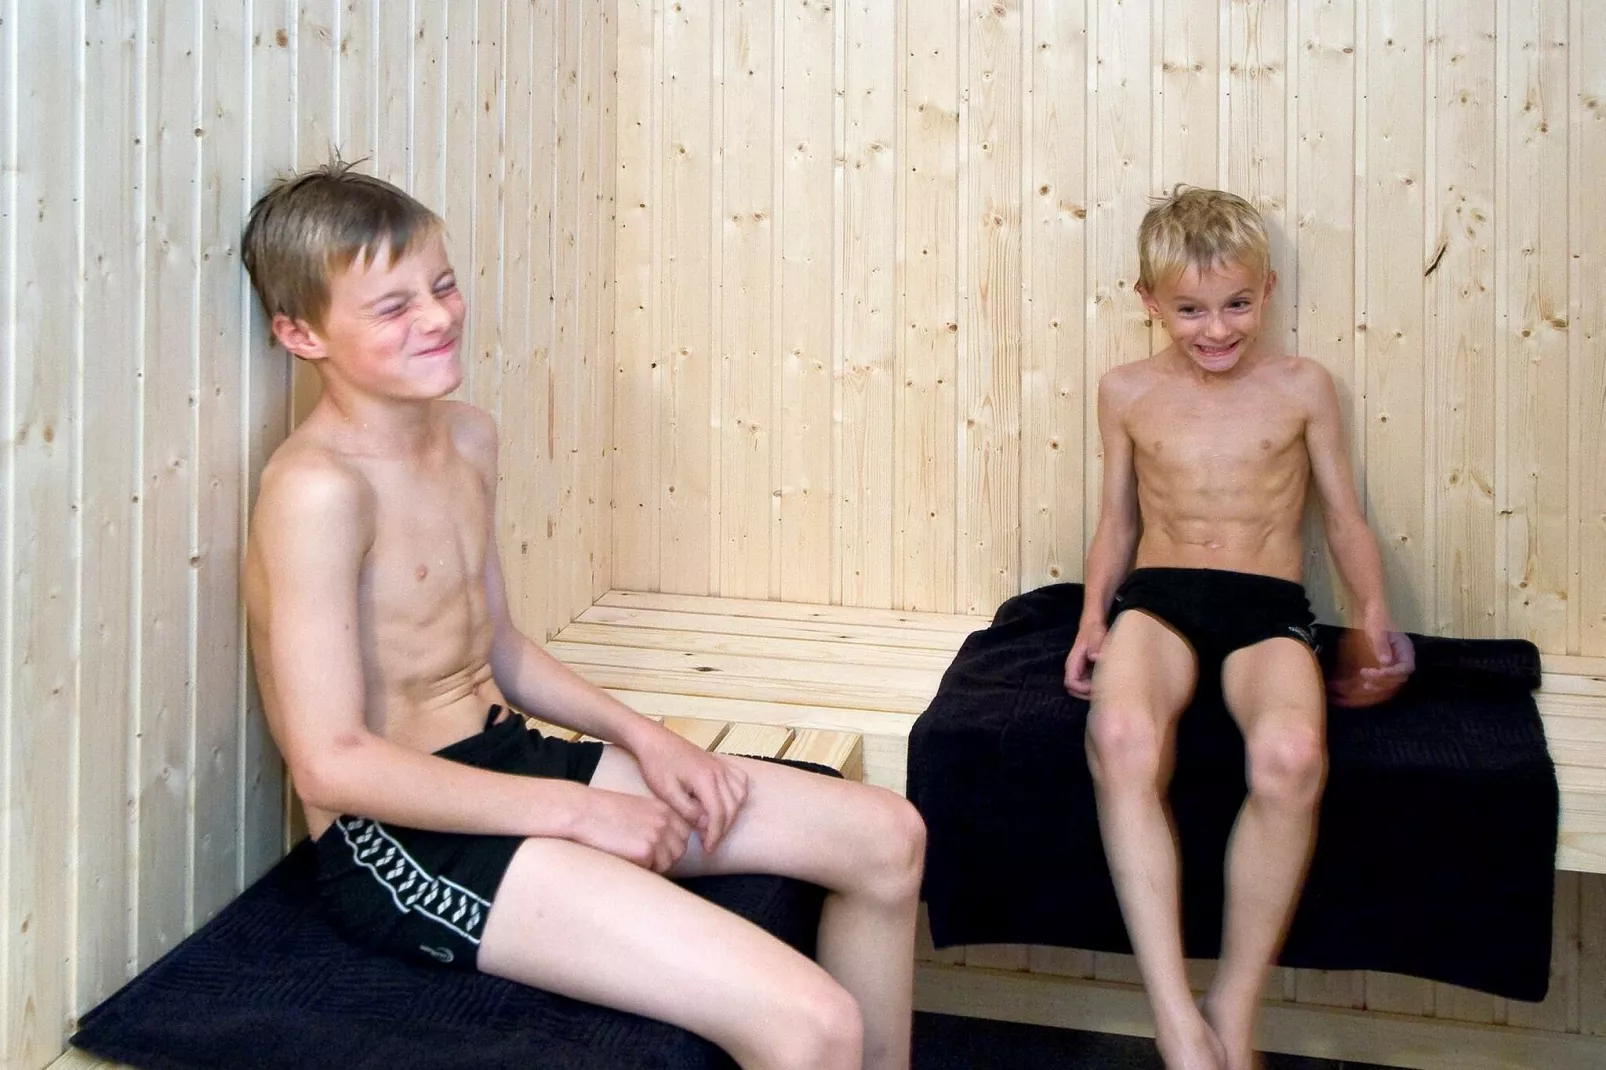 18 persoons vakantie huis in Idestrup-Sauna